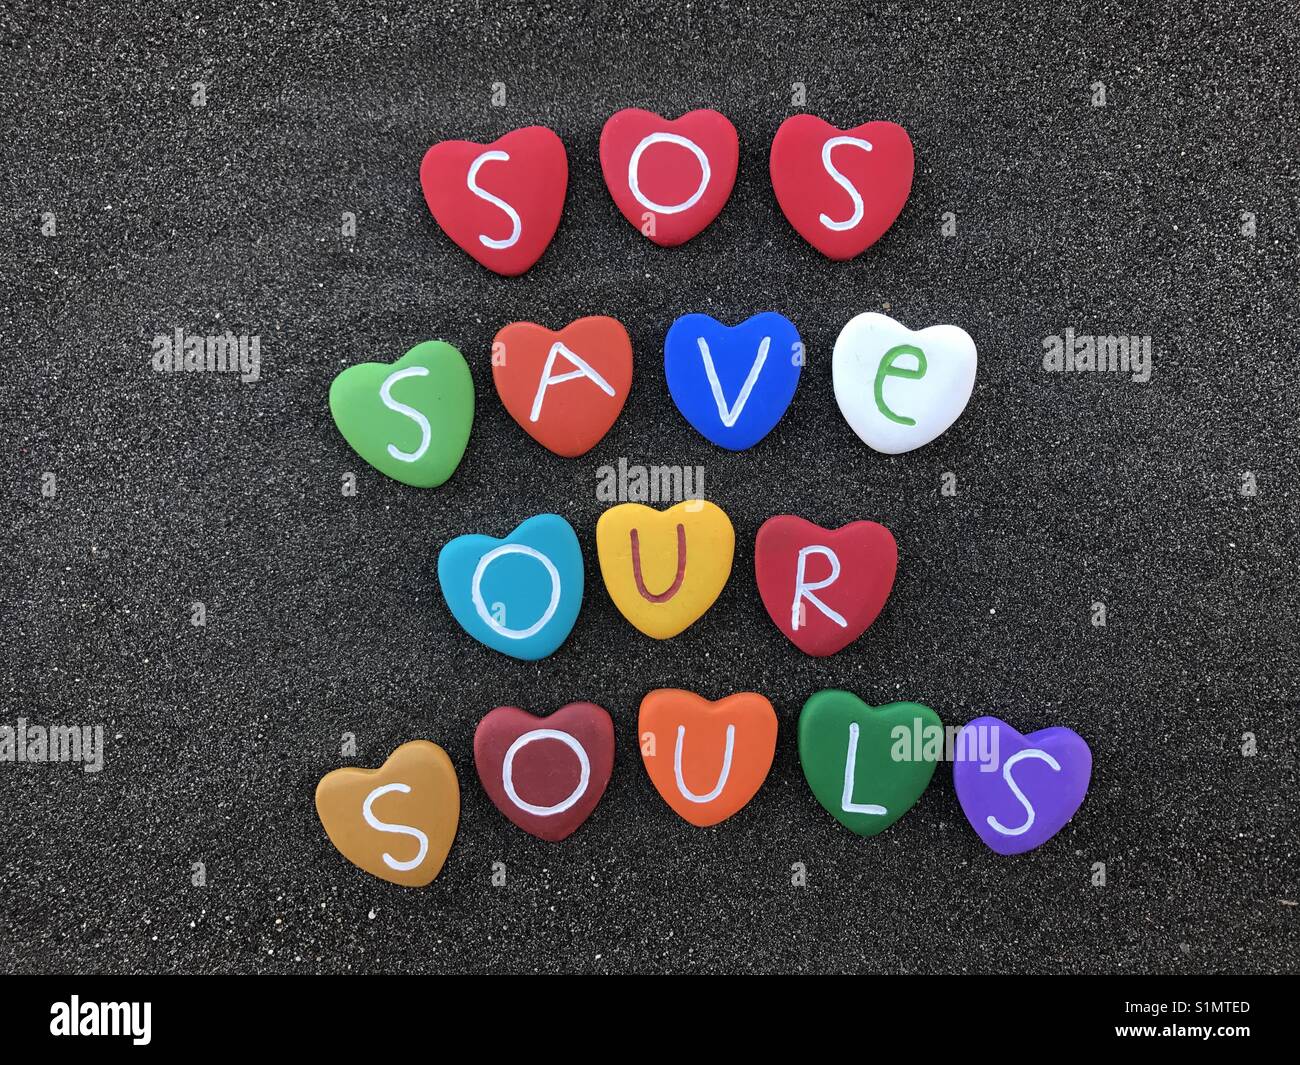 SOS, salva le nostre anime, international codice Morse segnale di emergenza con cuore colorato pietre su sabbia nera vulcanica Foto Stock